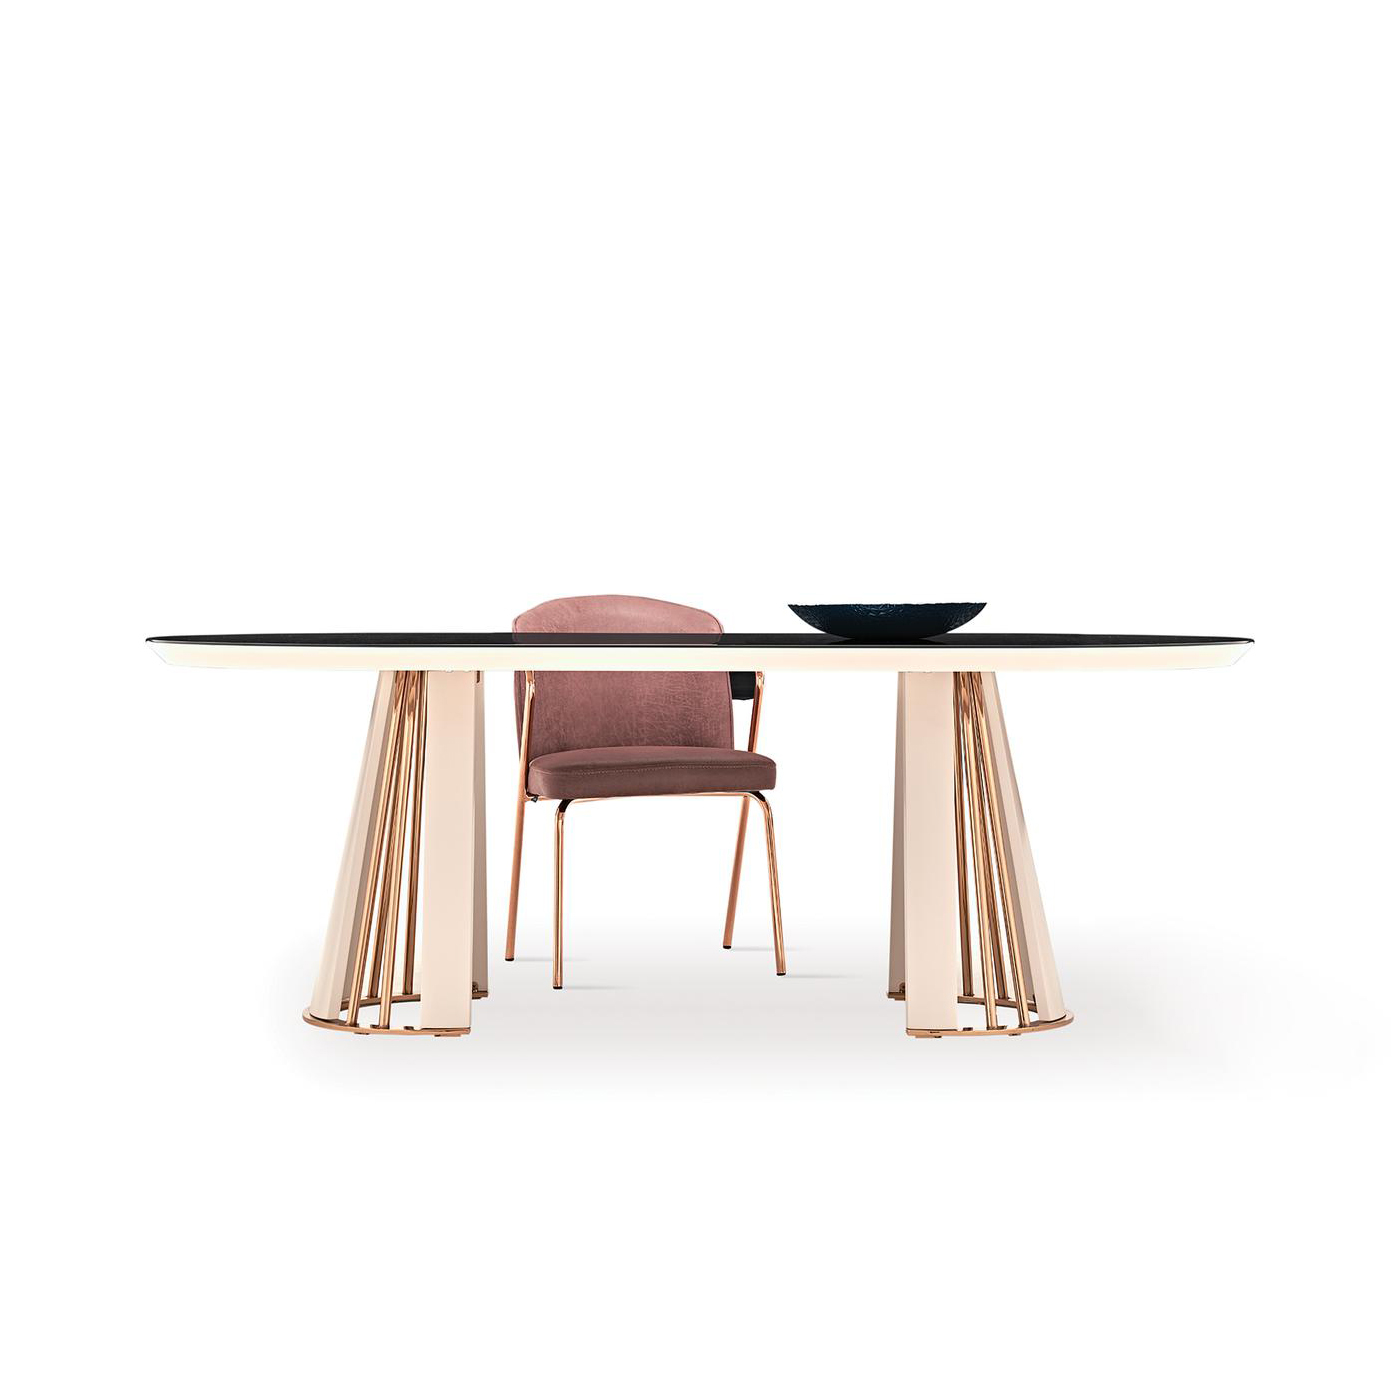 Стол обеденный Enza Home Vienna, овальный, размер 220х110х76 см, цвет пудровый, стеклянная поверхность07.182.0551.0000.0000.0226.